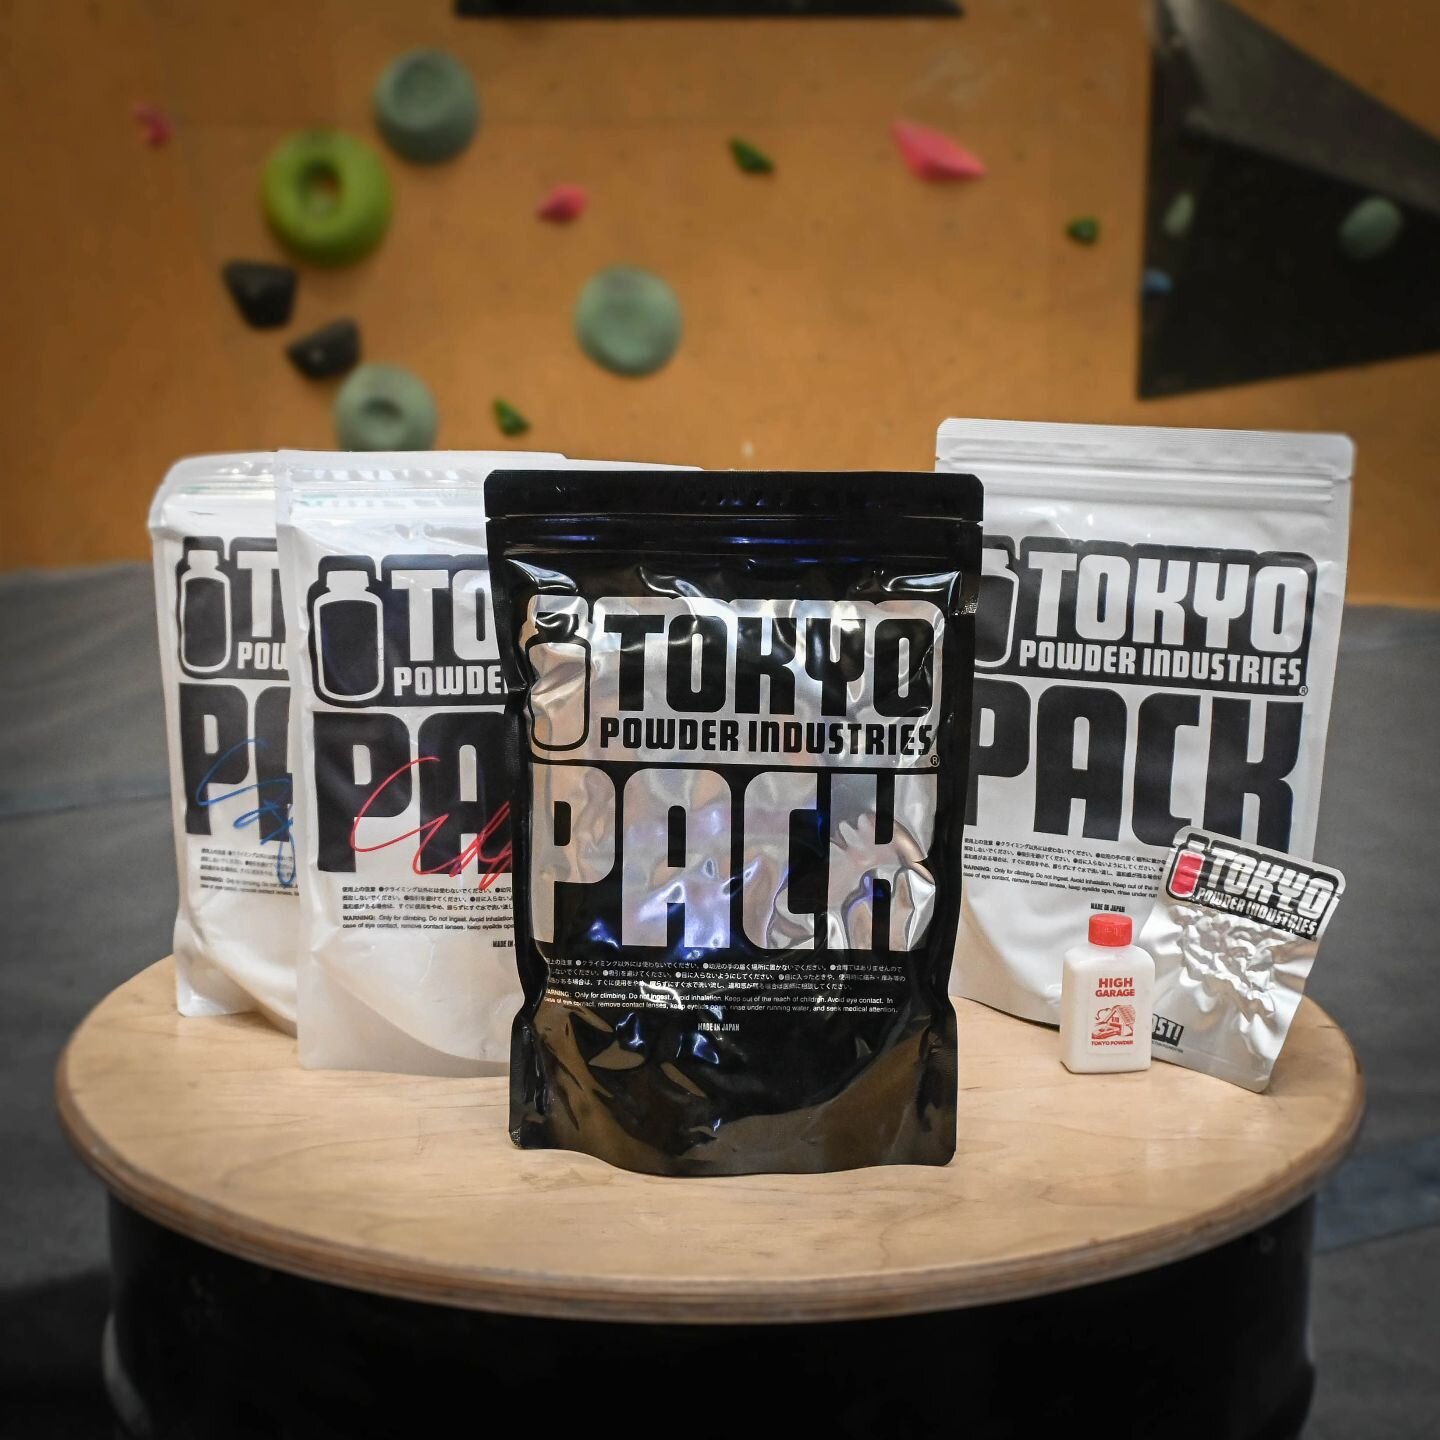 Tokyo Powder 💨💨🇯🇵💨💨

Jesteśmy wyłącznym dystrybutorem Tokyo Powder Industries (@tokyopowder) w Polsce!

Dlaczego zdecydowaliśmy się na wsp&oacute;łpracę z firmą, kt&oacute;ra produkuje magnezję aż w Japonii?
Ponieważ jest to najlepsza magnezja 